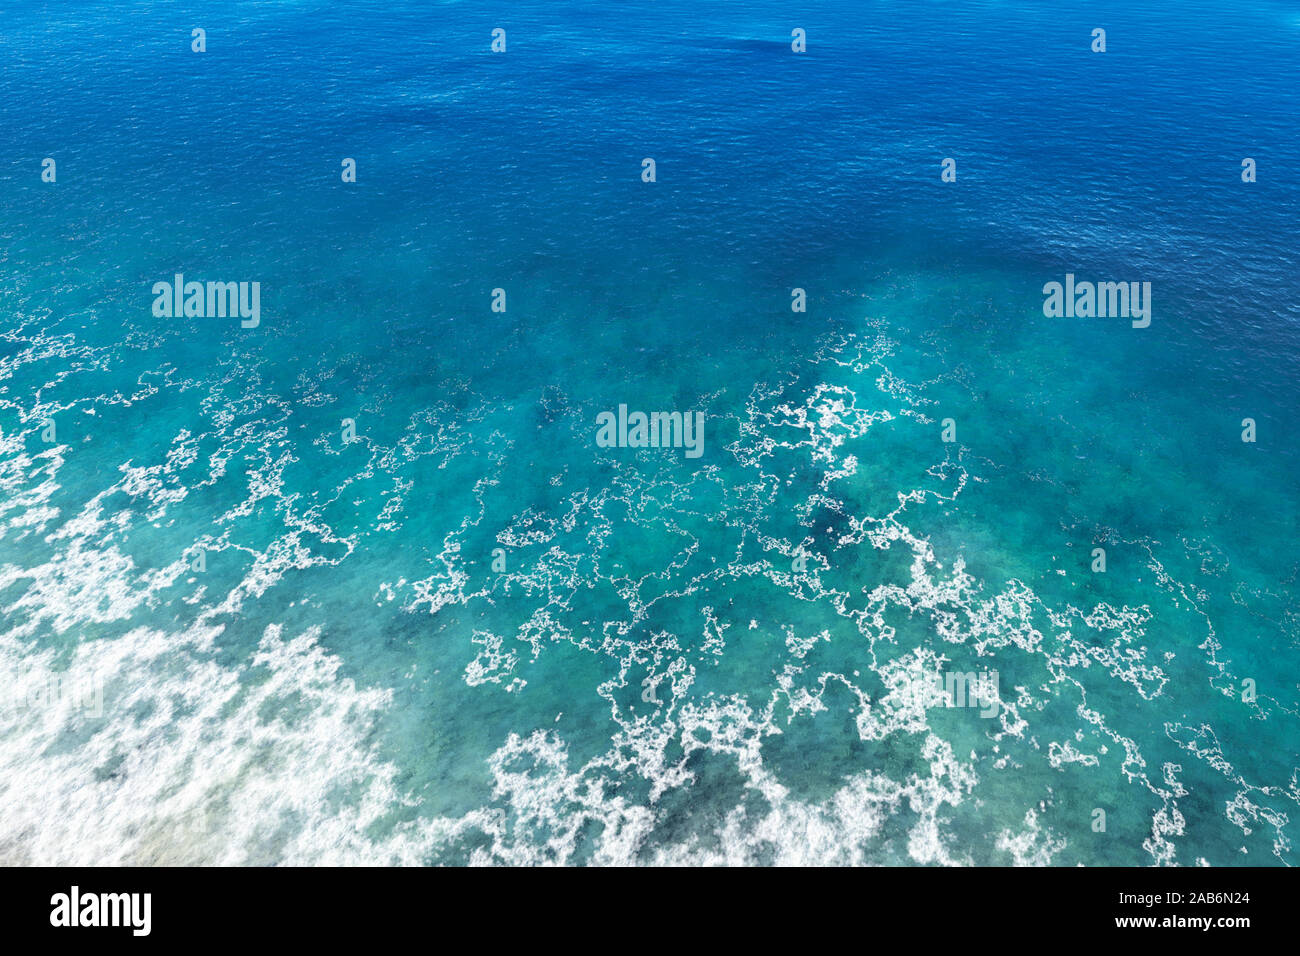 Ein Beispiel für eine blaue Wasser scape Ufer Stockfoto